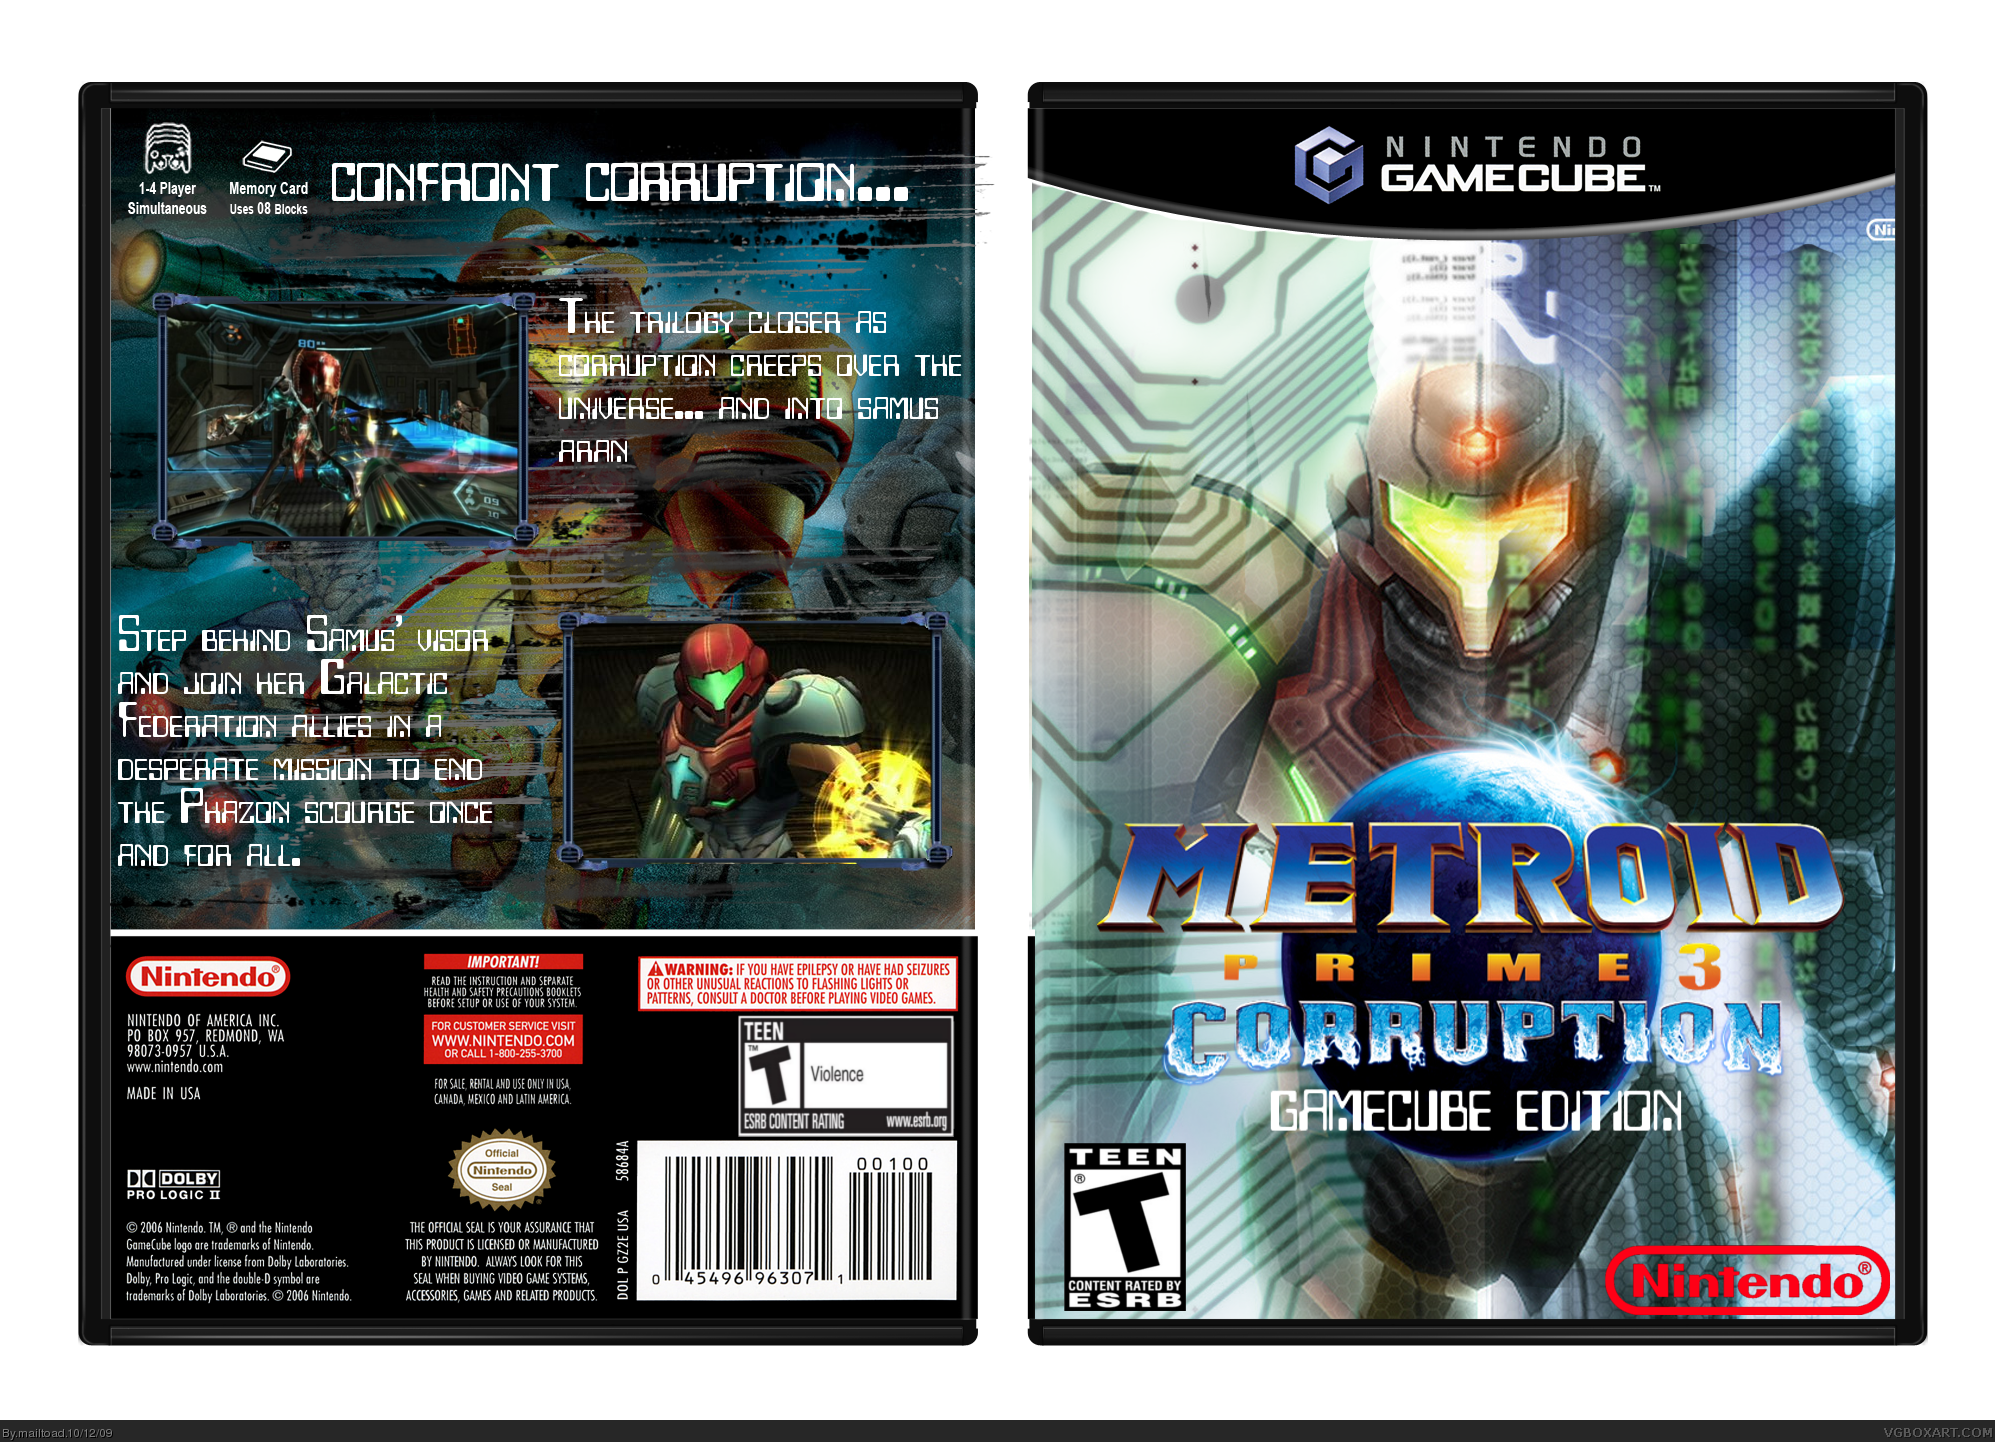 Metroid Prime 3: Corruption GCN box cover